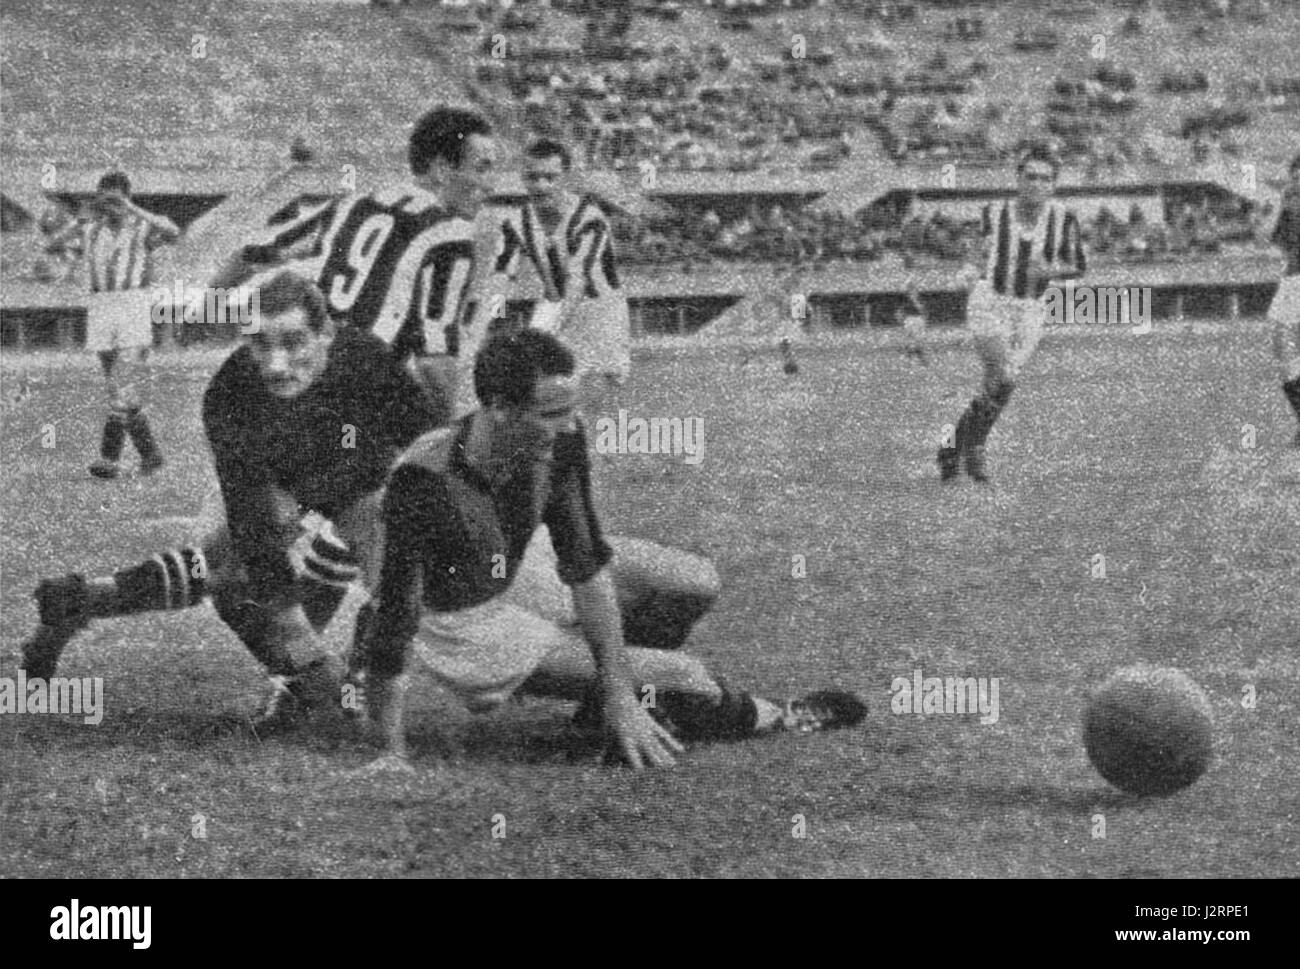 Torino (Italia), Stadio Comunale 'Benito Mussolini', 28 giugno 1942. Gioca nella zona AC Milan, nella partita tra Juventus e A.C. Milan (4-1) valida per la finale di ritorno della Coppa Italia 1941-42; riconosciamo il portiere AC Milan Giovanni Rossetti (a sinistra). Foto Stock